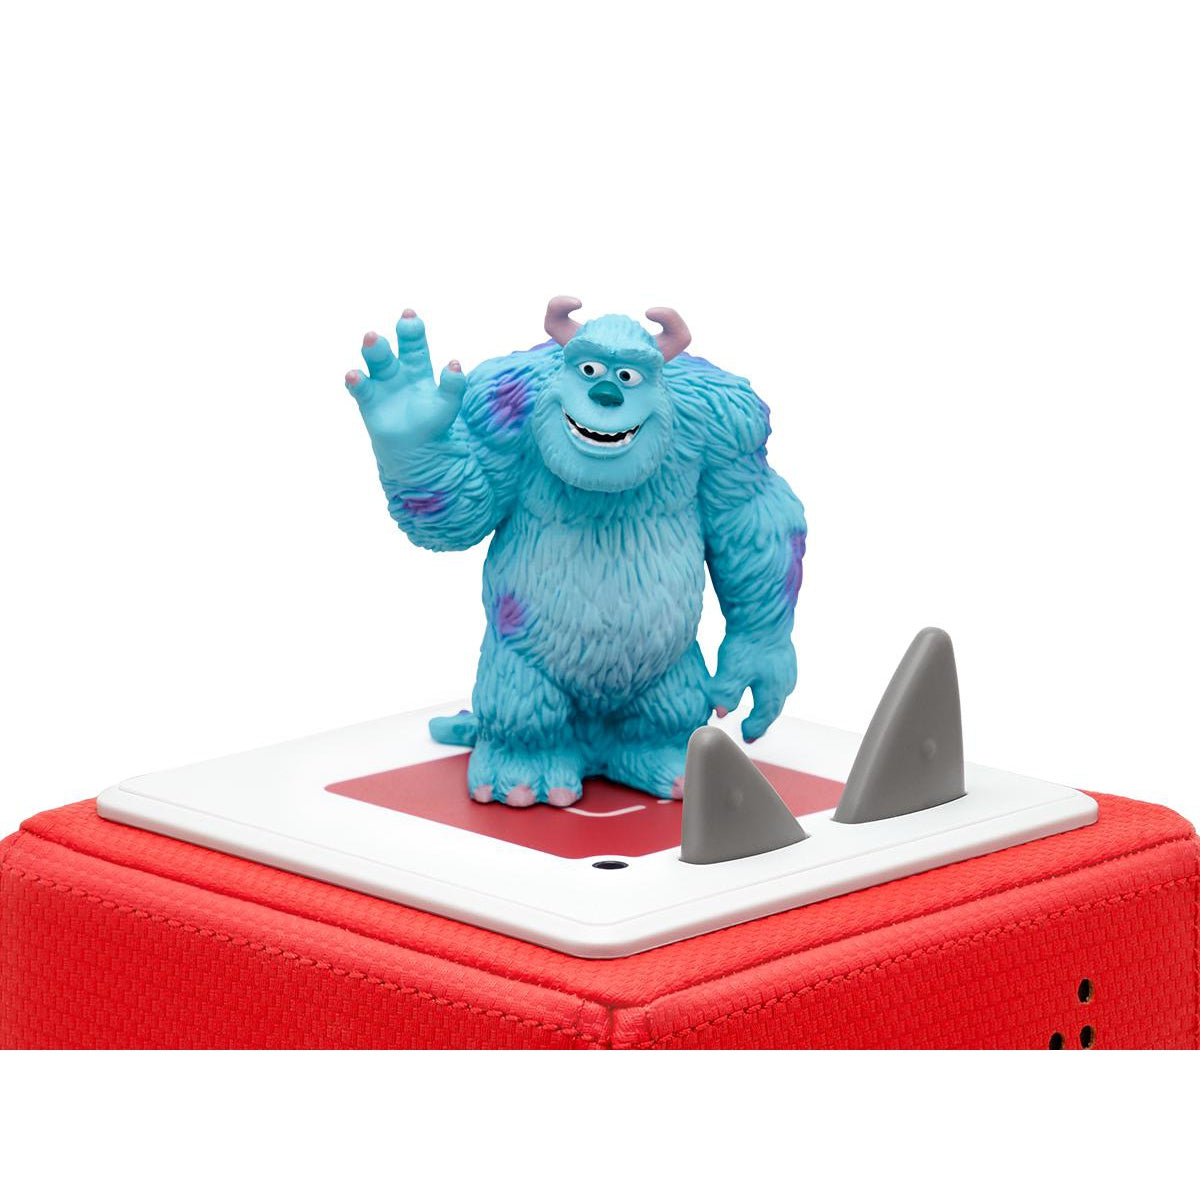 Disney Monsters Inc Tonie Figure